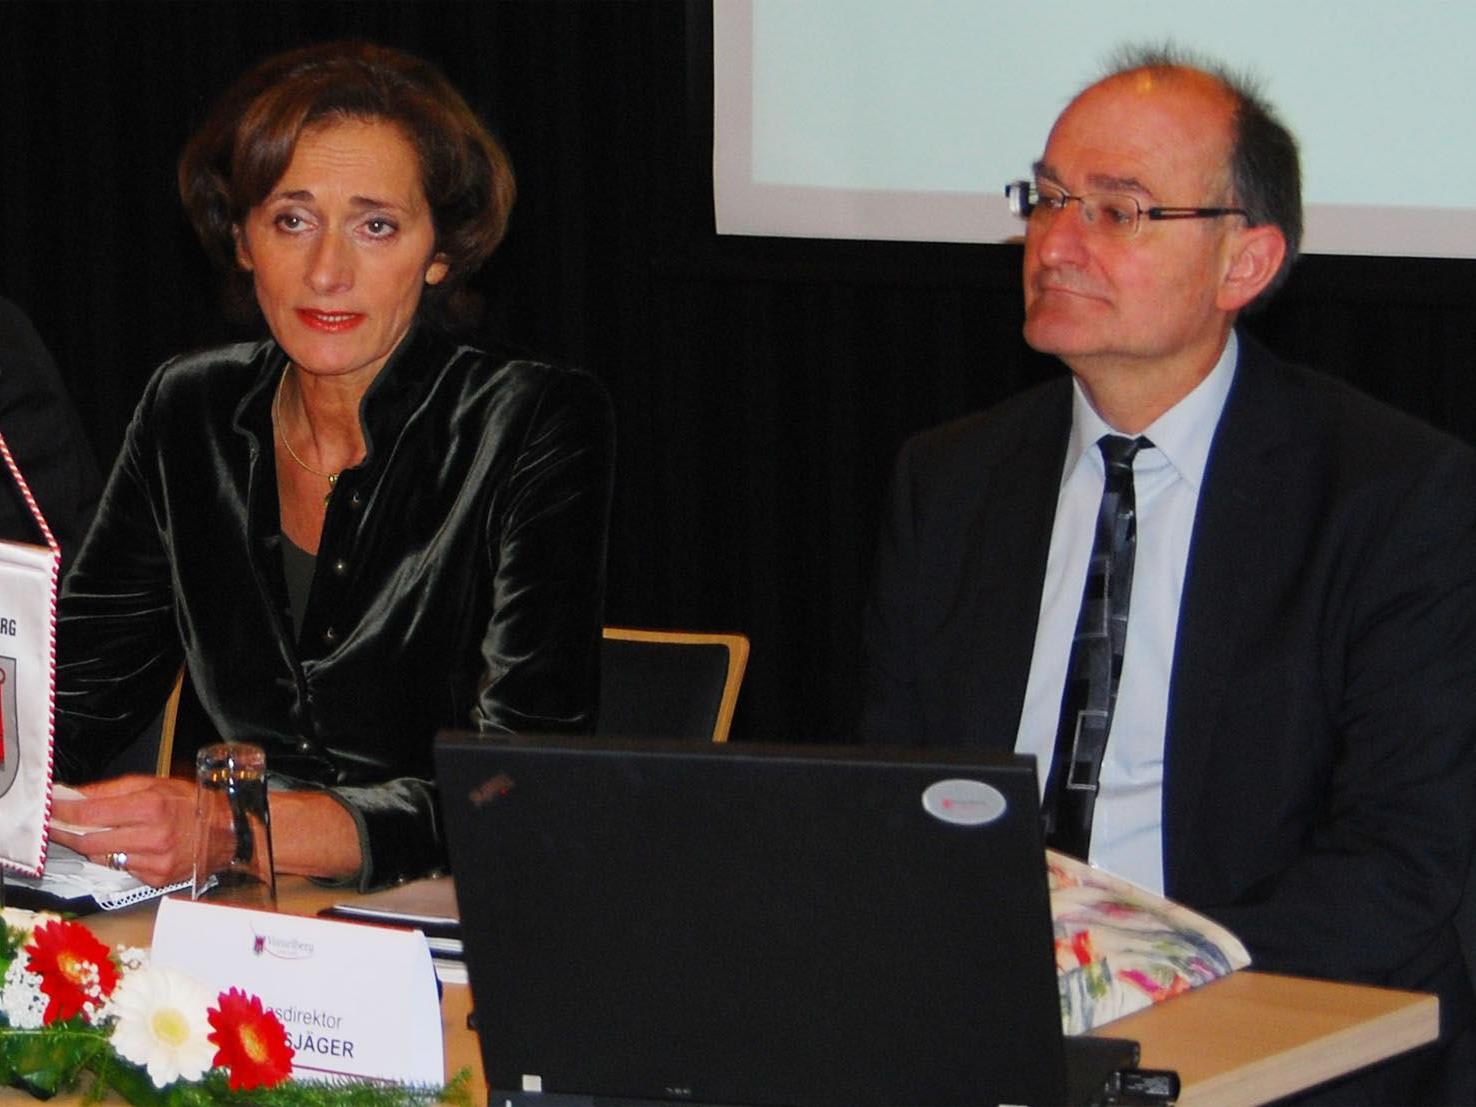 LT-Präsidentin Mennel und LT-Direktor Bußjäger, Leiter des Föderalismus Instituts Innsbruck.